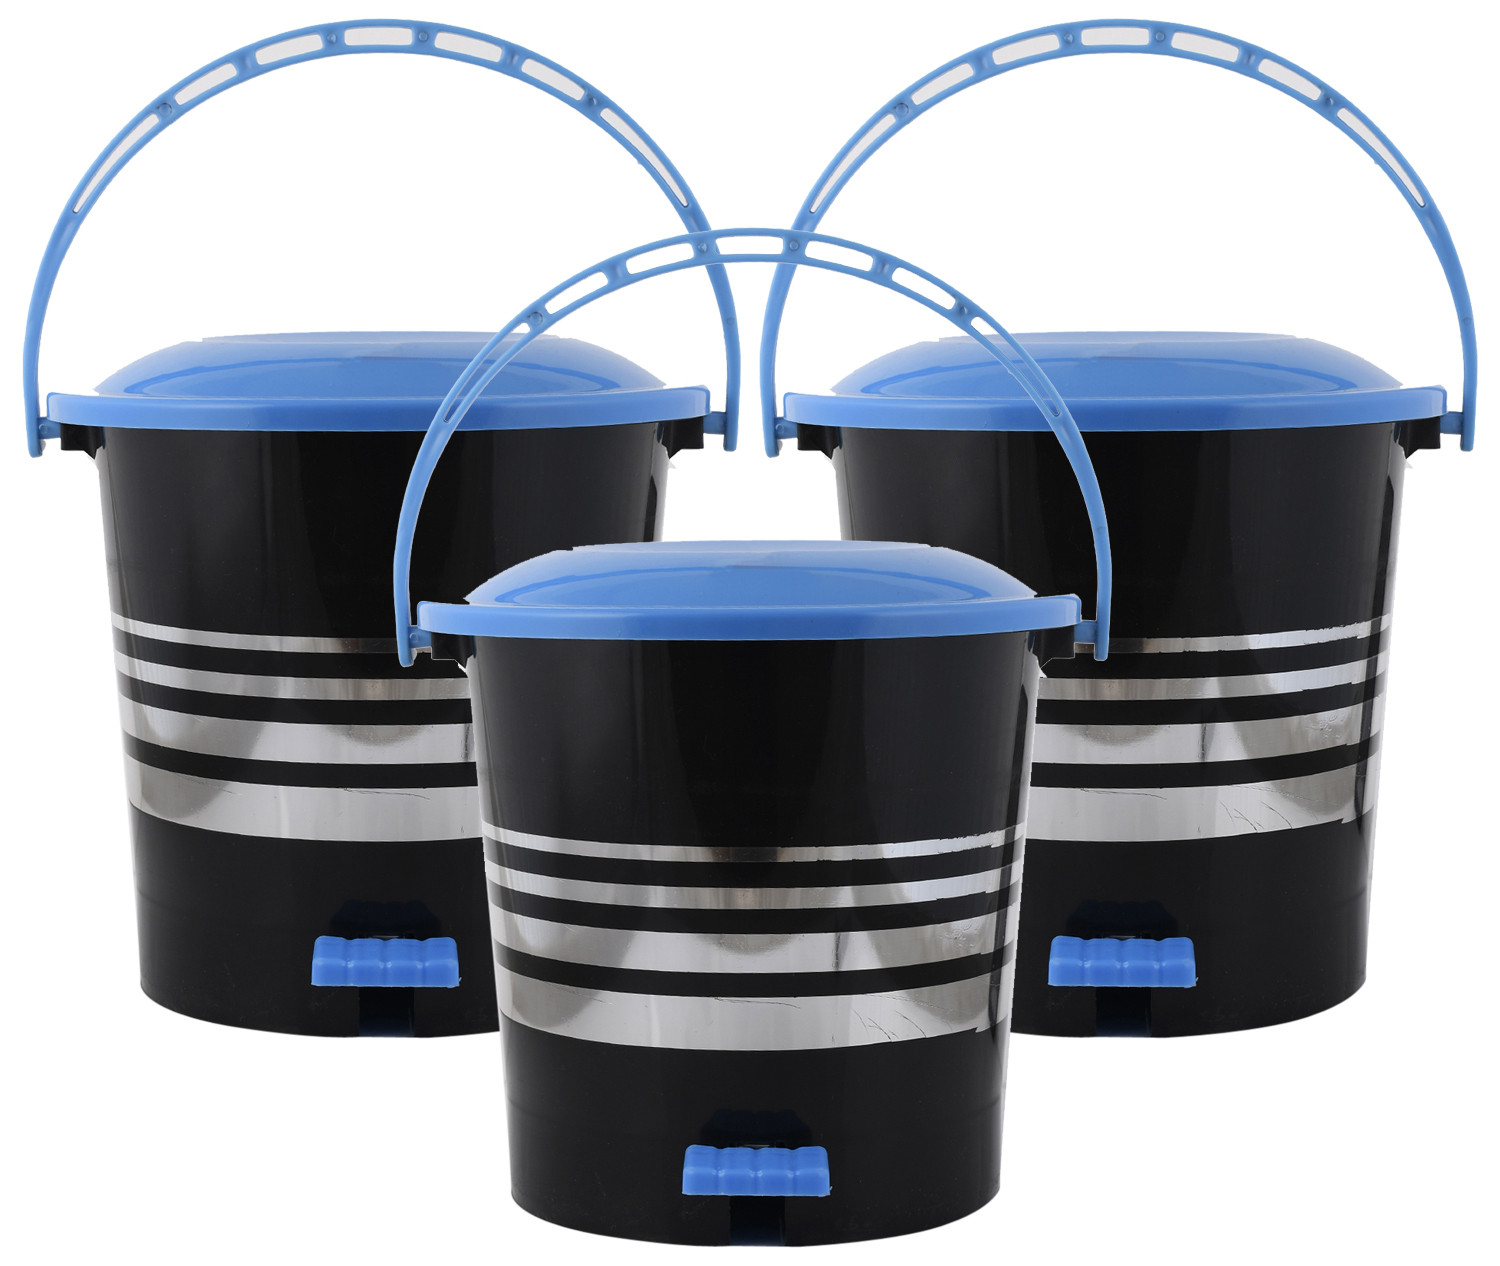 Kuber Industries Plastic Dustbin Garbage Bin with Handle,10 Liters (Blue) -CTKTC38017